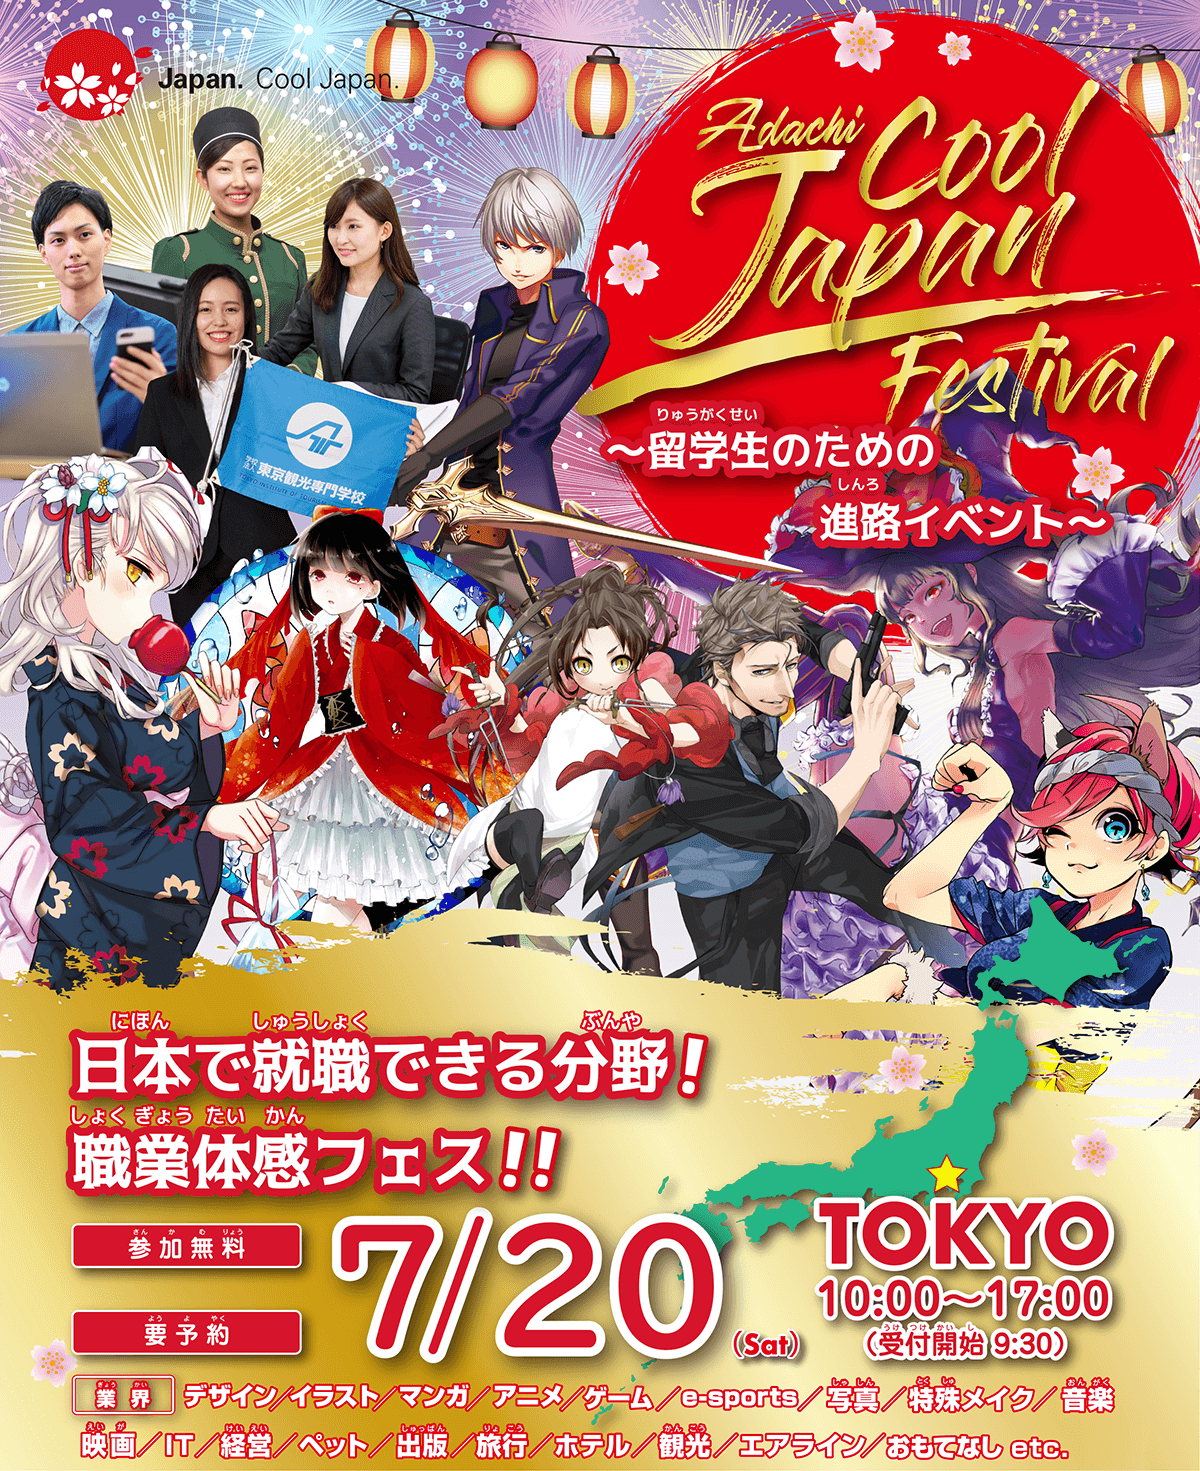 留学生のための夏祭り Cool Japan Festival18 Adachi学園グループ